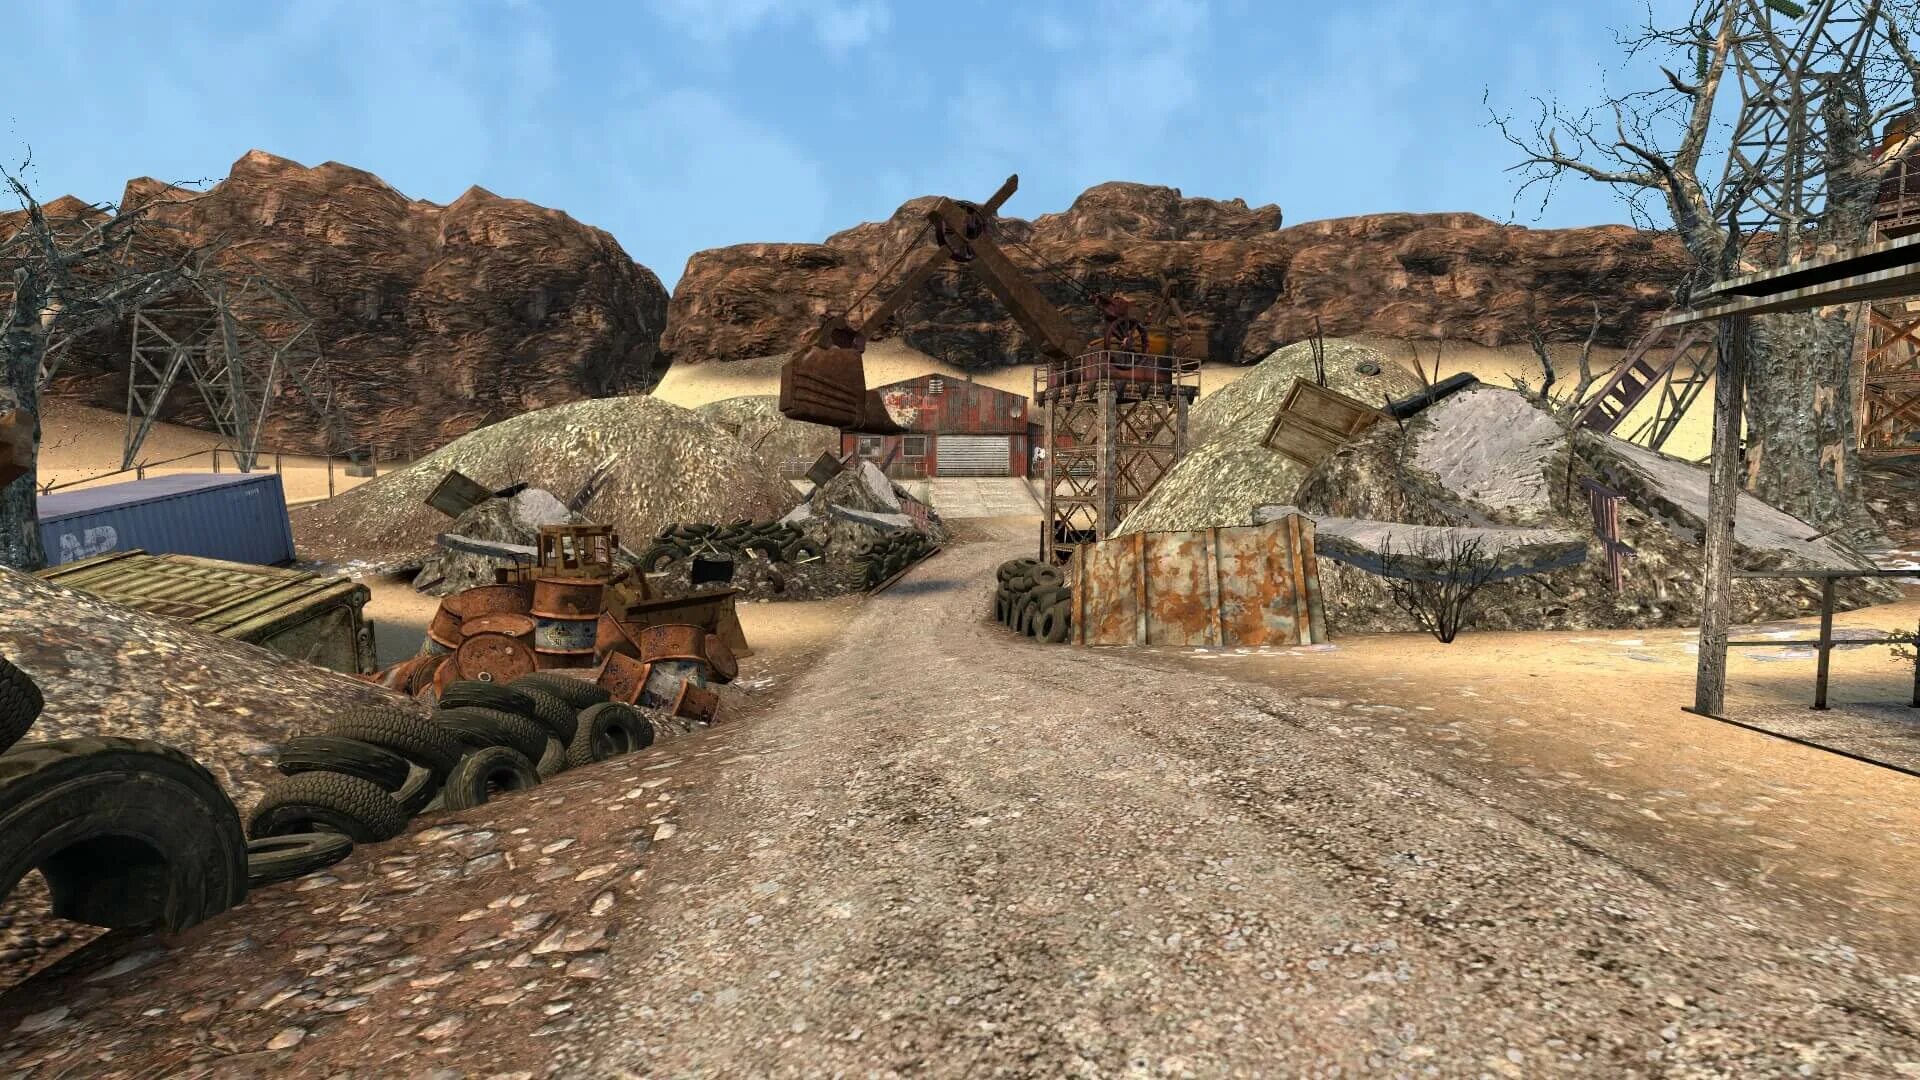 Движок соурс. Garry's Mod пустыня. Source 2 движок. Fallout New Vegas трасса 95. Игры на движке соурс